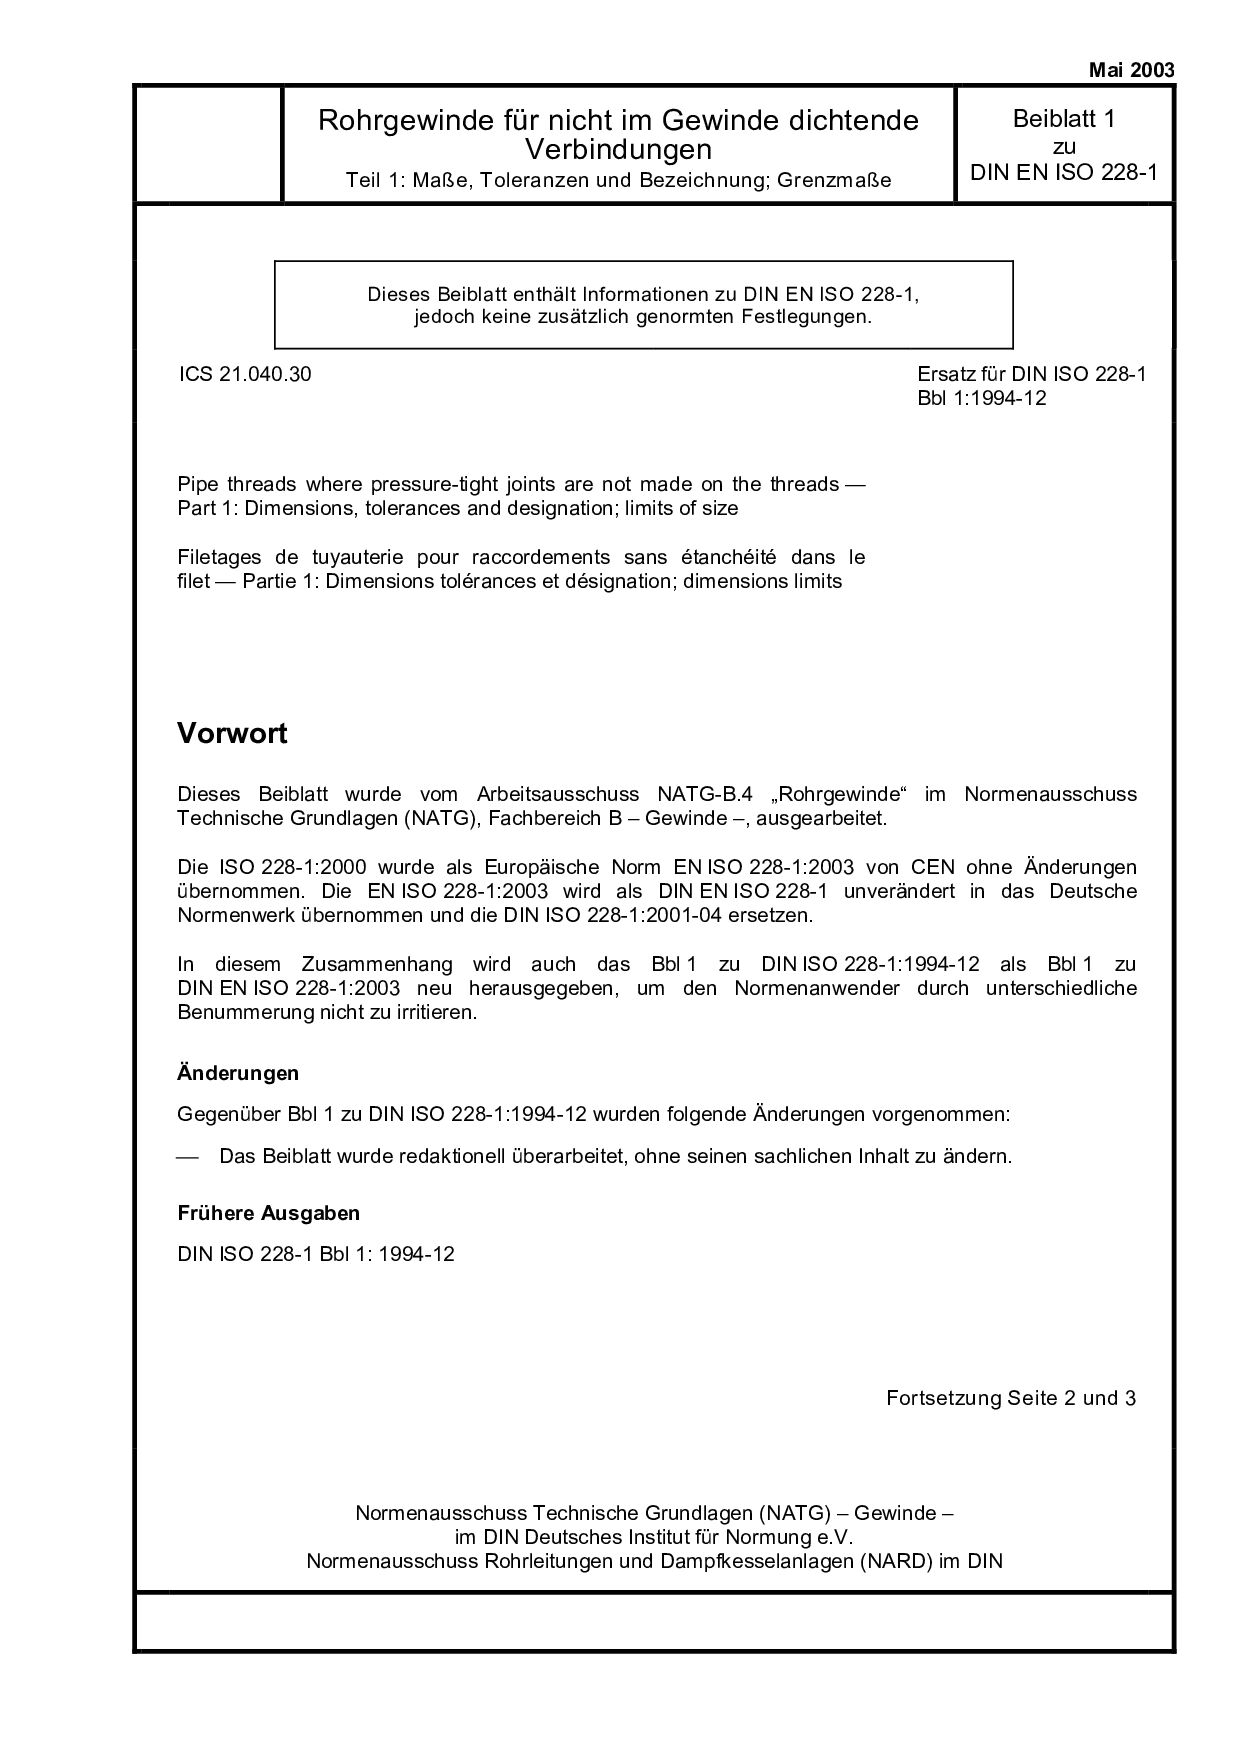 DIN EN ISO 228-1 Beiblatt 1:2003封面图